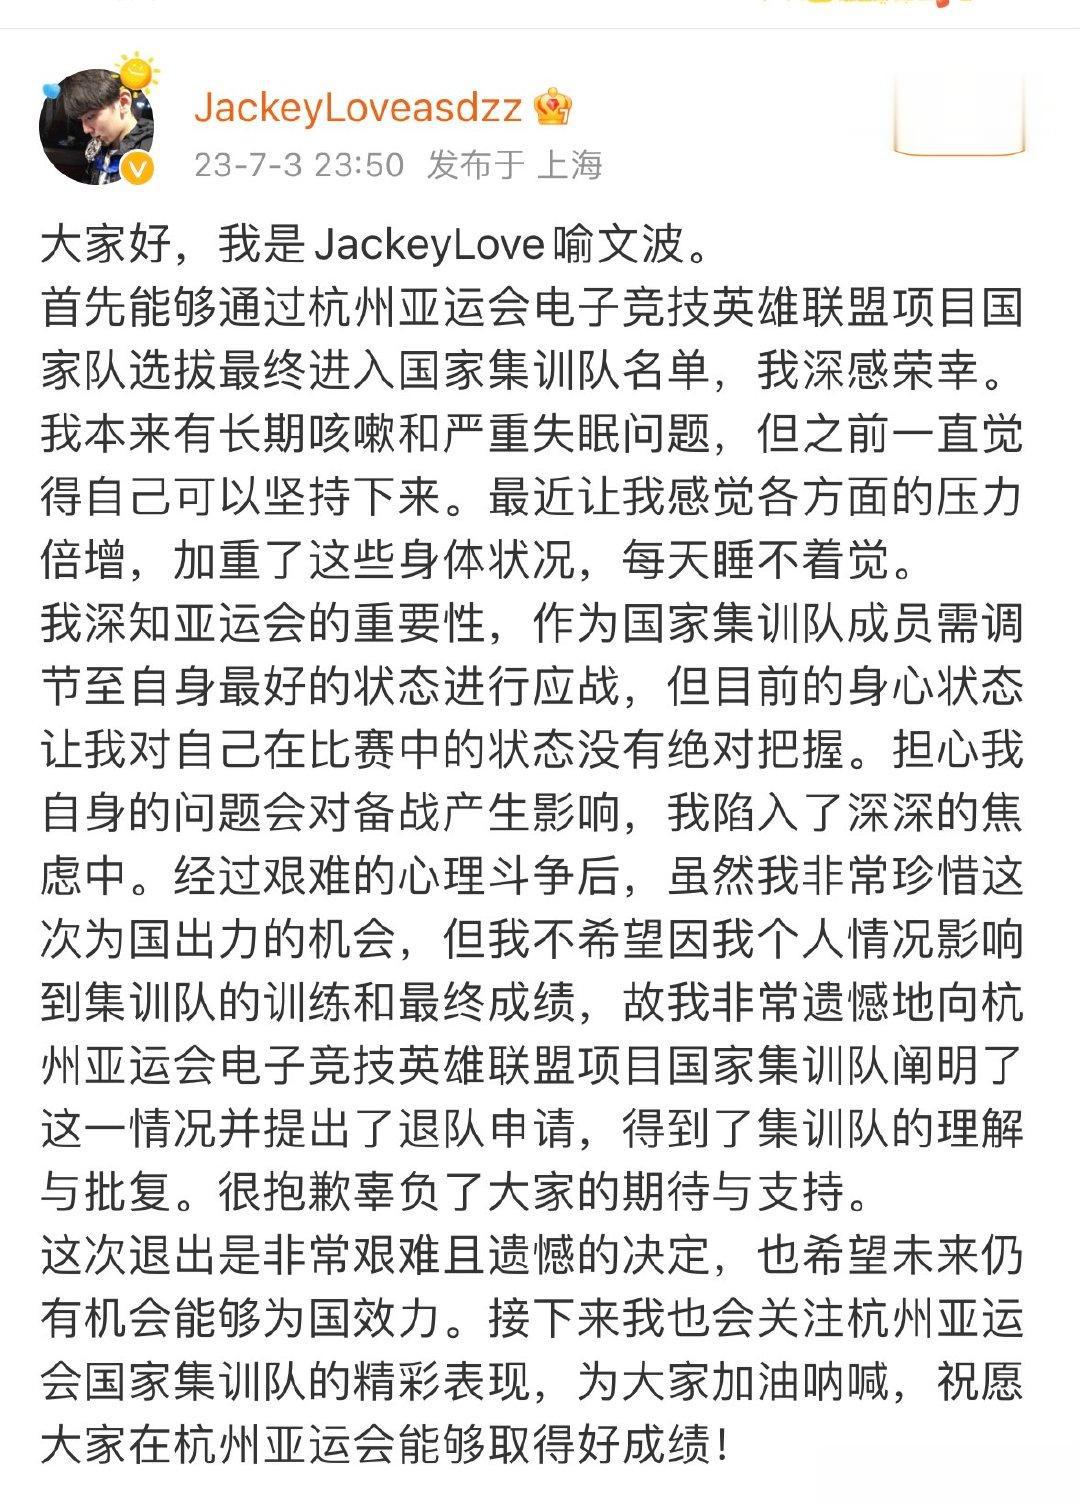 #JackeyLove退出亚运会集训队##jackeylove369退出亚运会集(1)